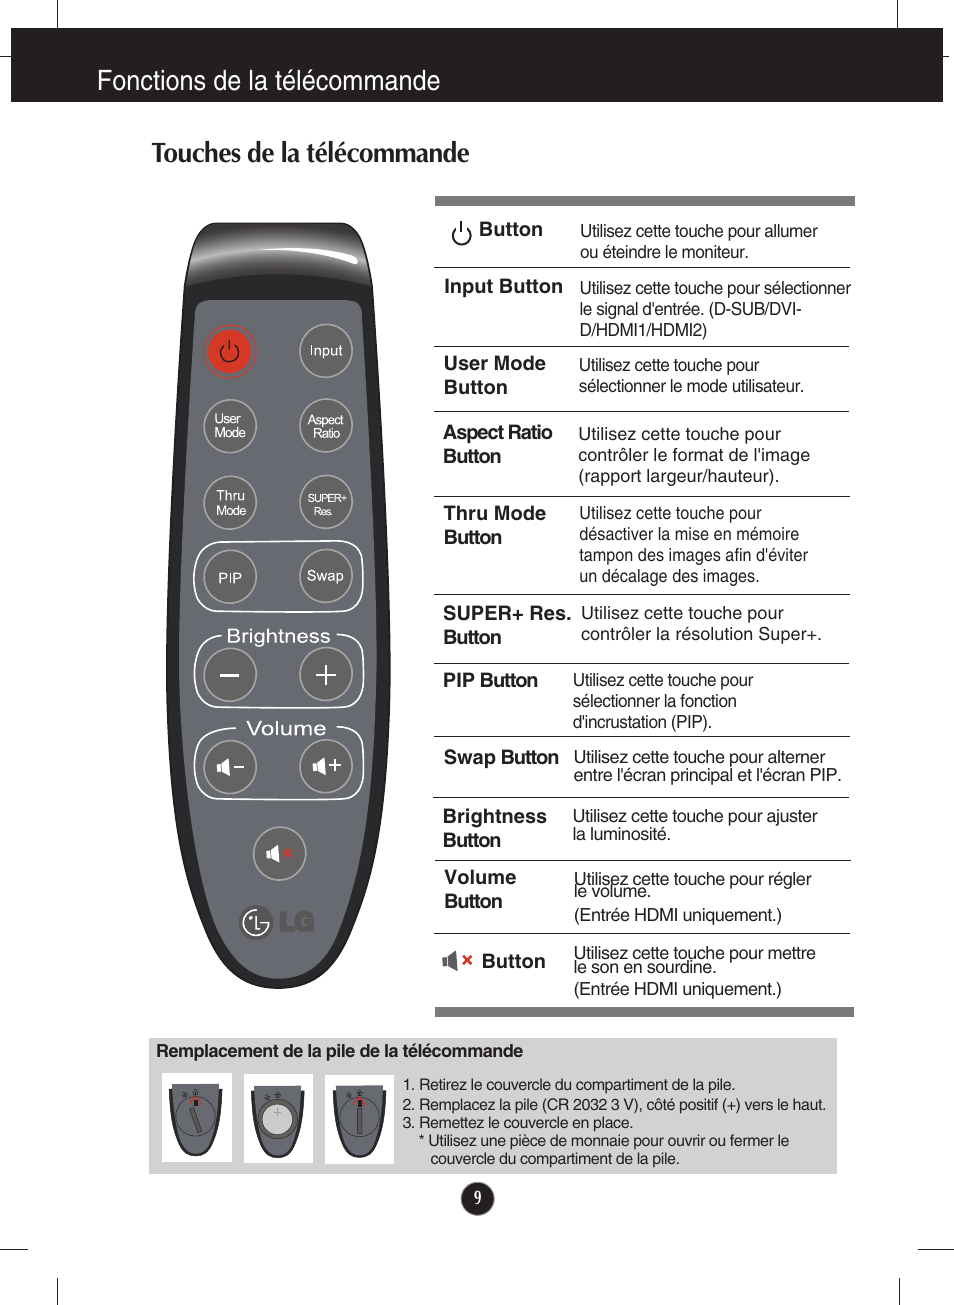 Fonctions de la télécommande, Touches de la télécommande | LG E2770V-BF Manuel d'utilisation | Page 10 / 38